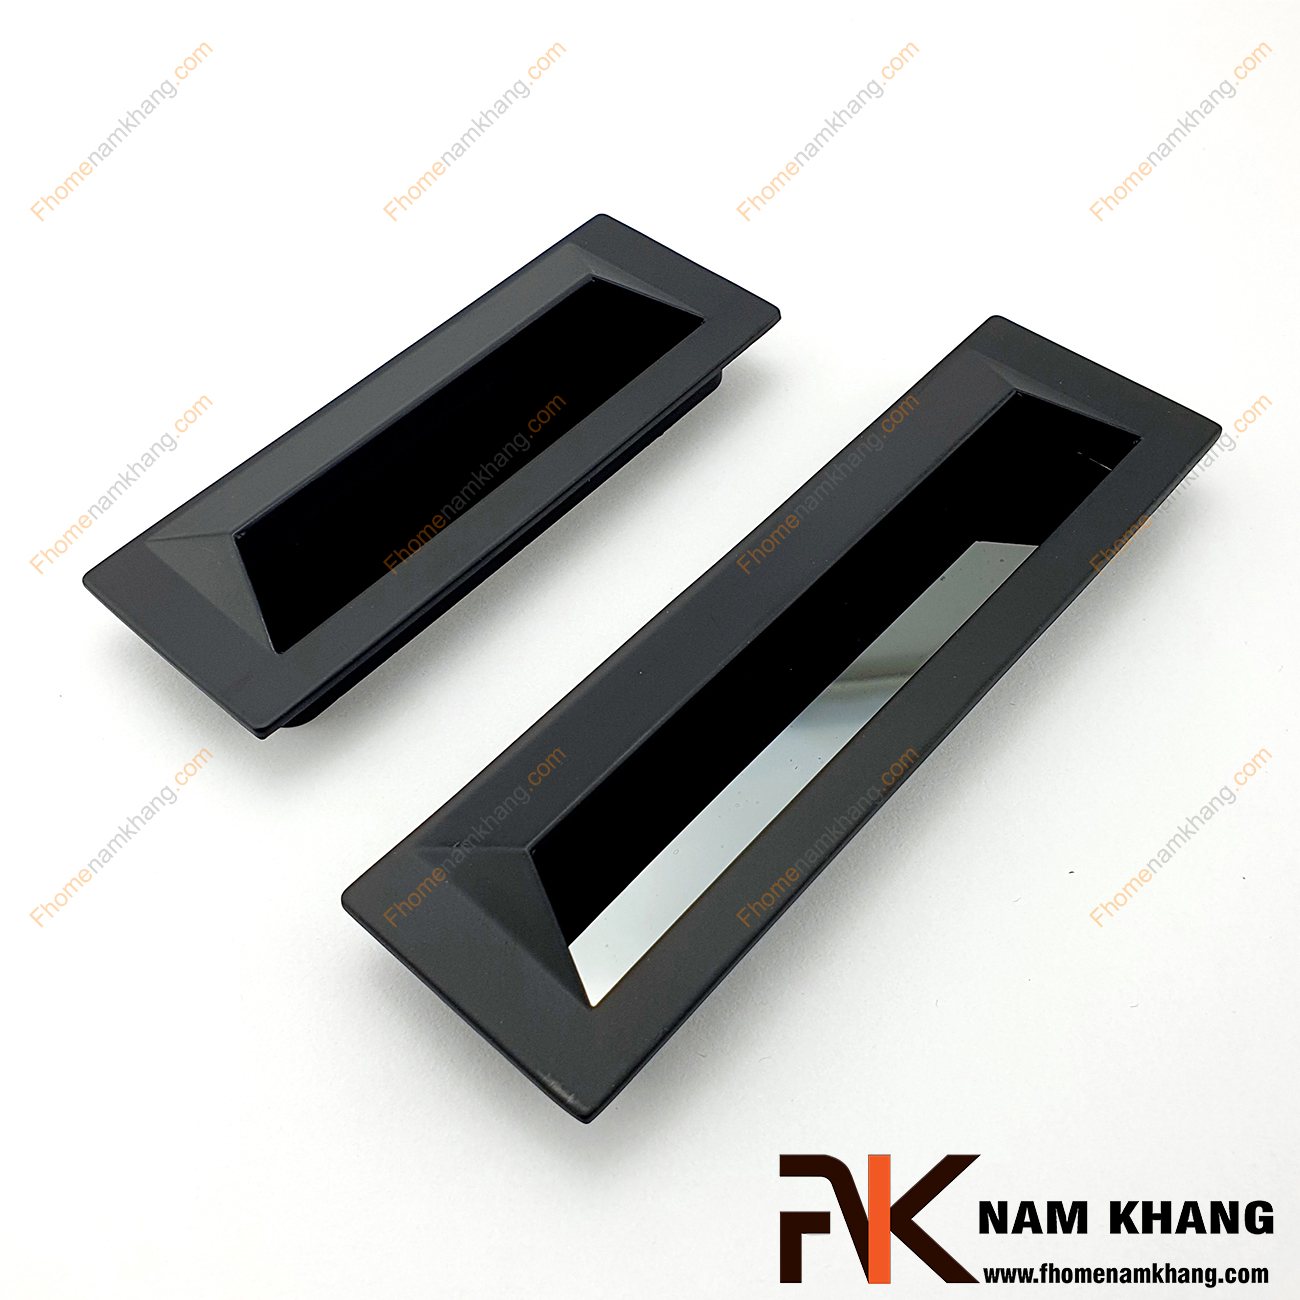 Tay nắm âm tủ dạng trơn màu đen mờ NK223-D là loại tay nắm chuyên dùng cho các loại tủ đặt ở những nơi có không gian hạn chế hoặc dùng để nâng cao tính thẫm mỹ của sản phẩm